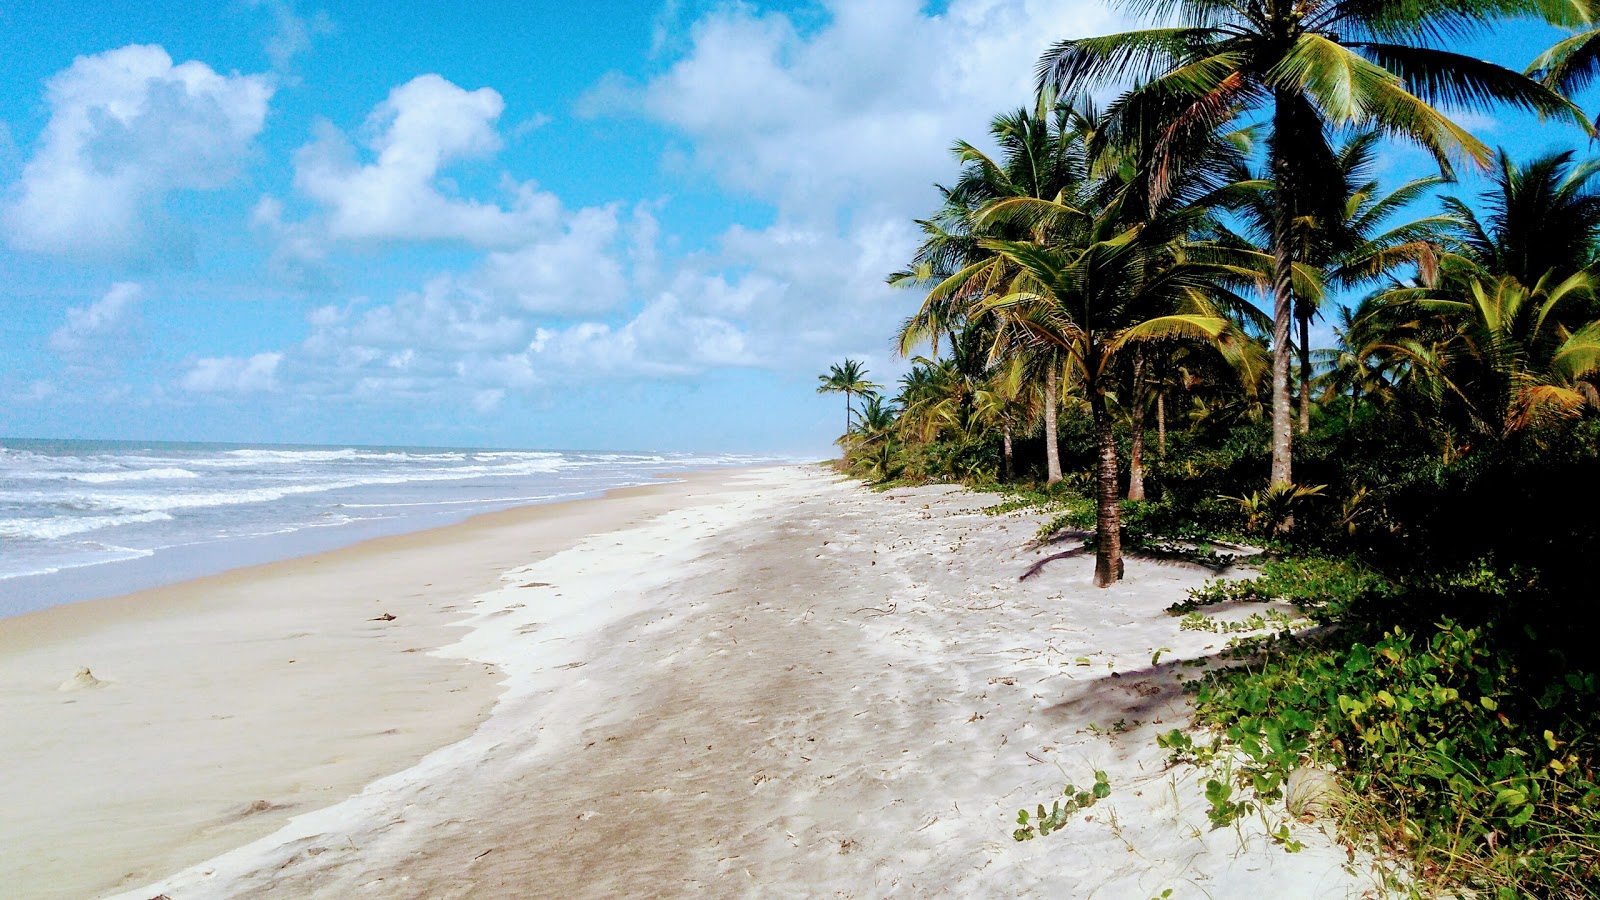 Fotografie cu Praia de Itacarezinho - locul popular printre cunoscătorii de relaxare